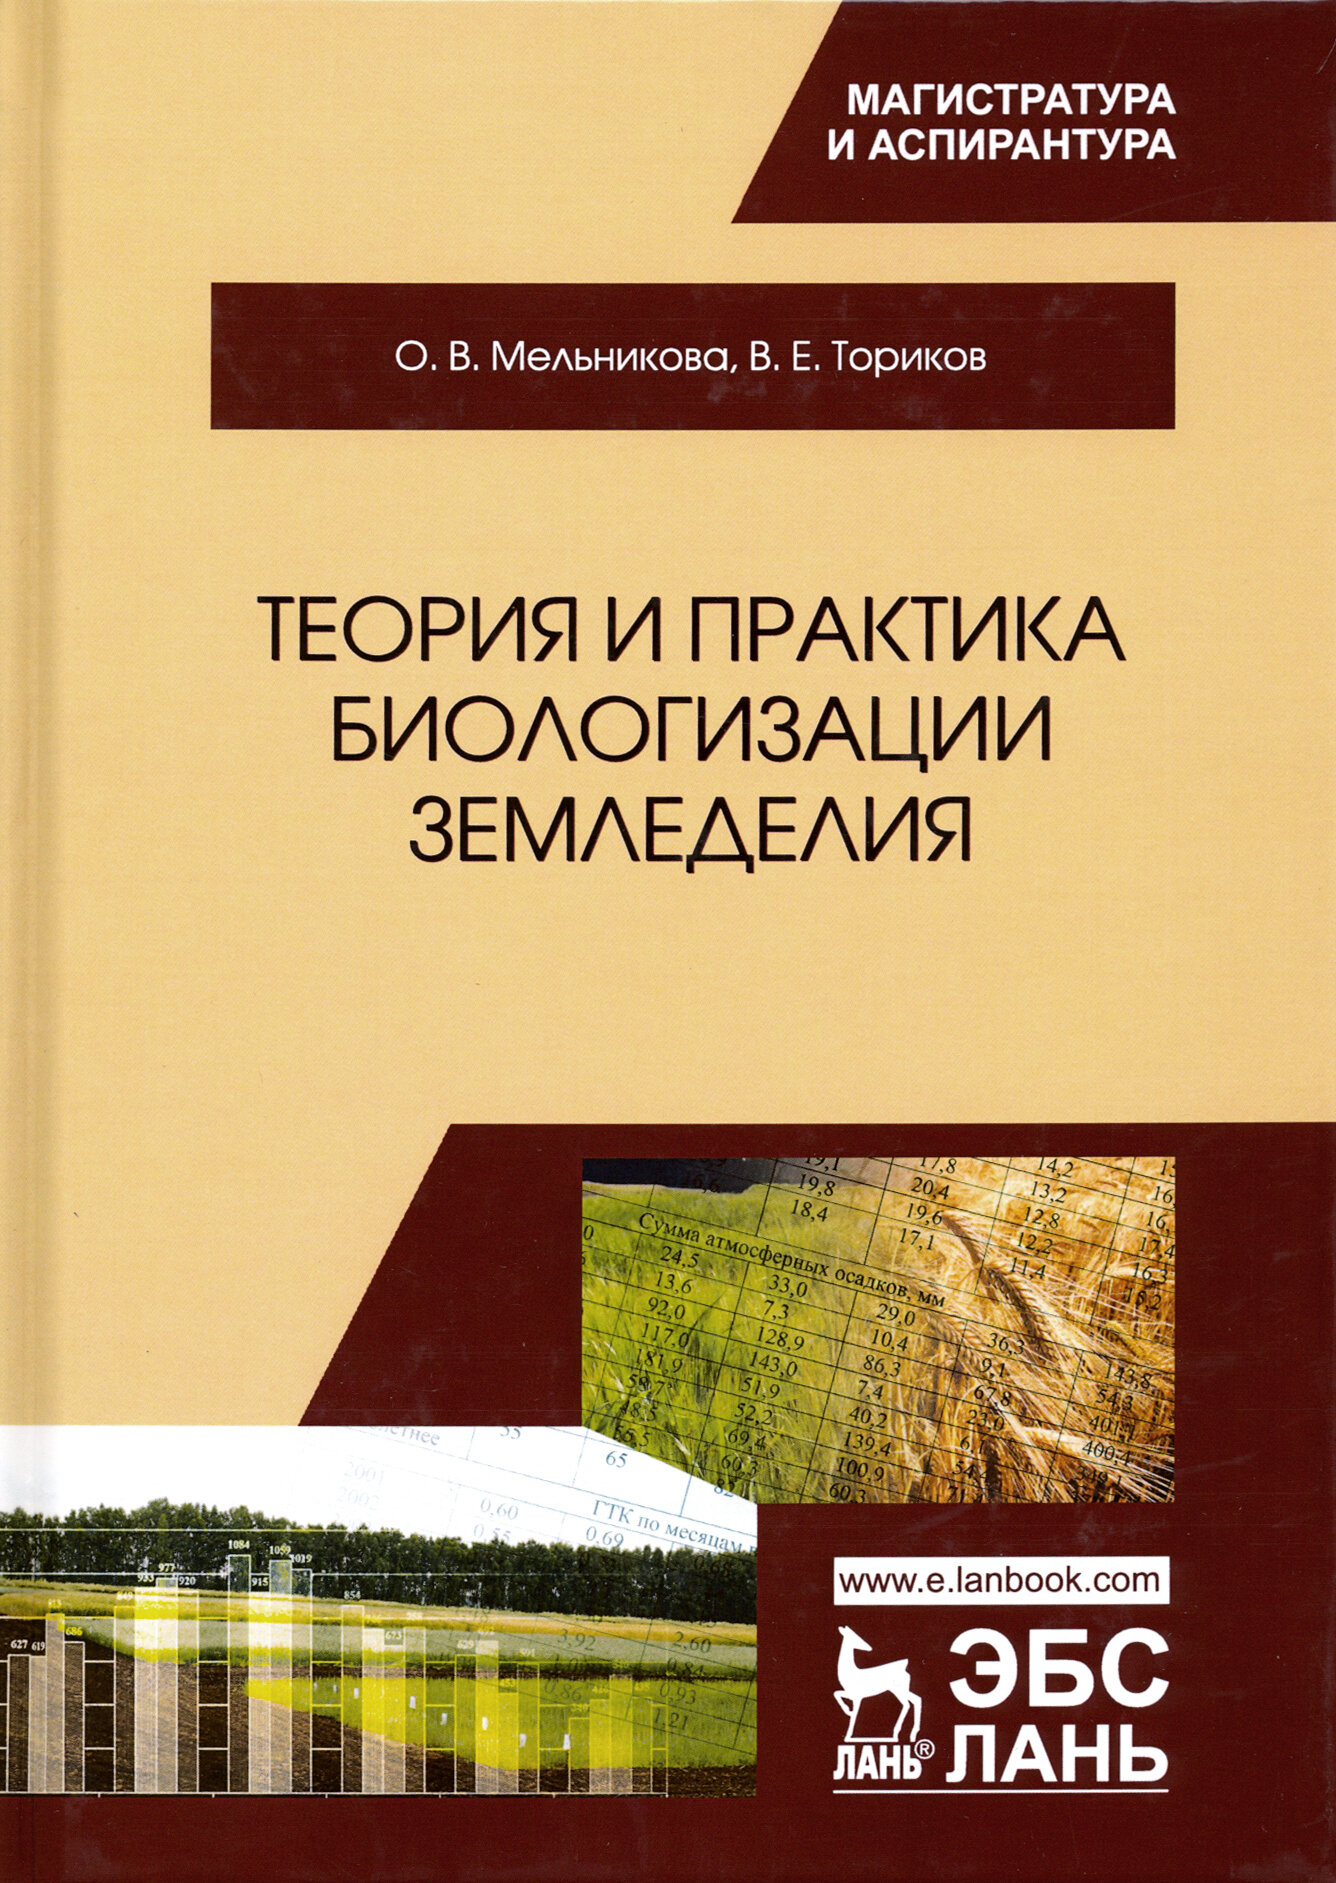 Теория и практика биологизации земледелия. Монография - фото №3